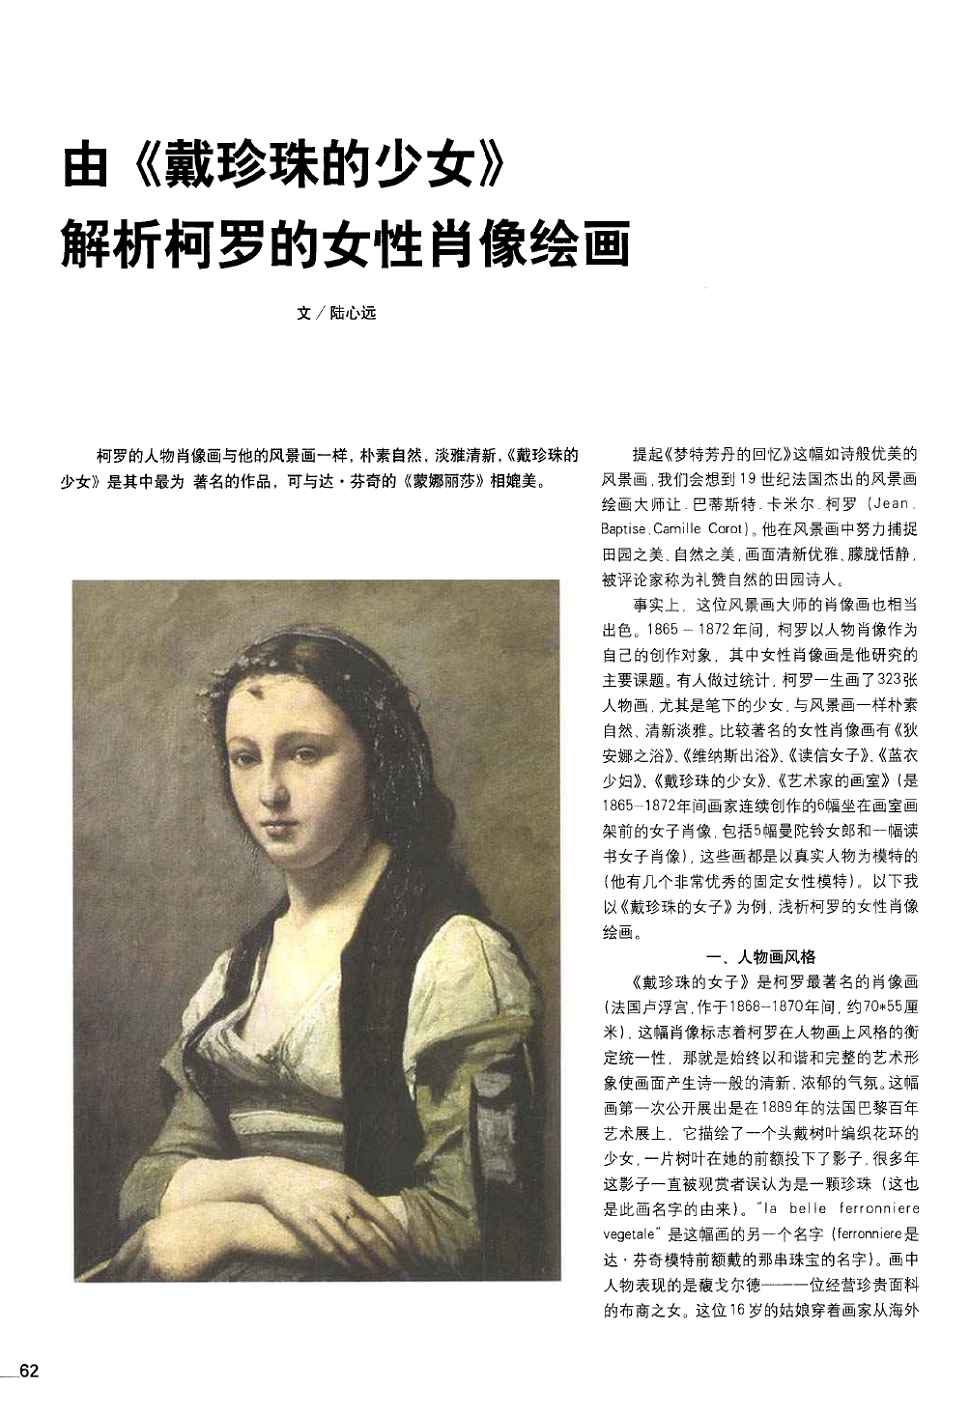 期刊由《戴珍珠的少女》解析柯罗的女性肖像绘画被引量:1     提起